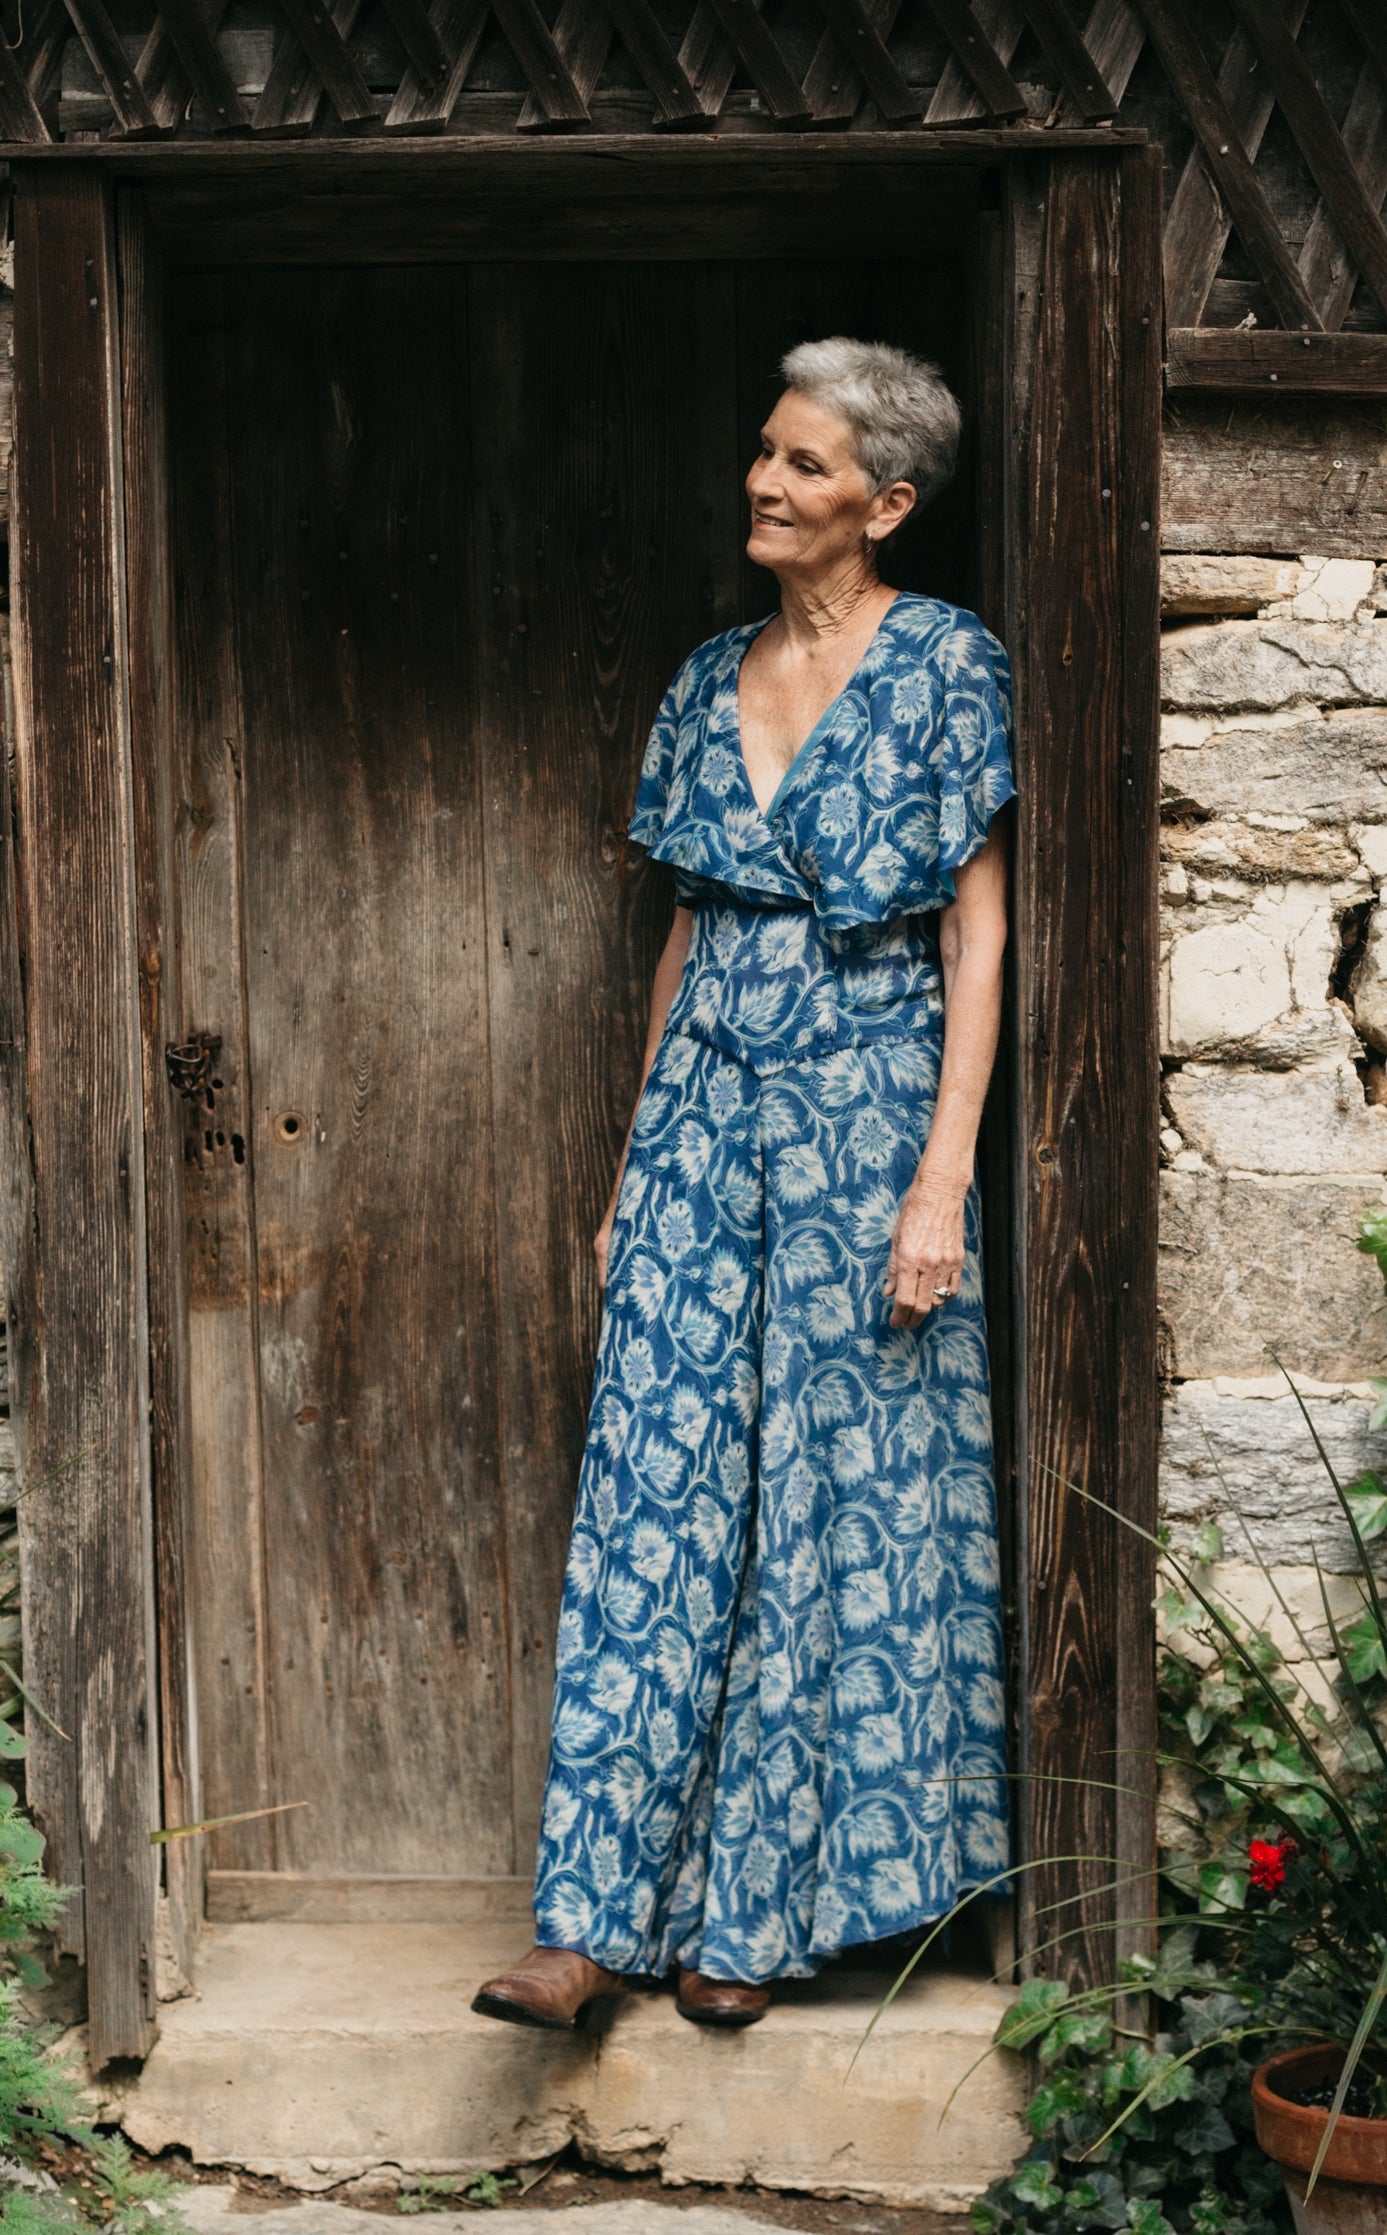 Woman in blue silk beach pyjamas leaning in doorway of stone building.